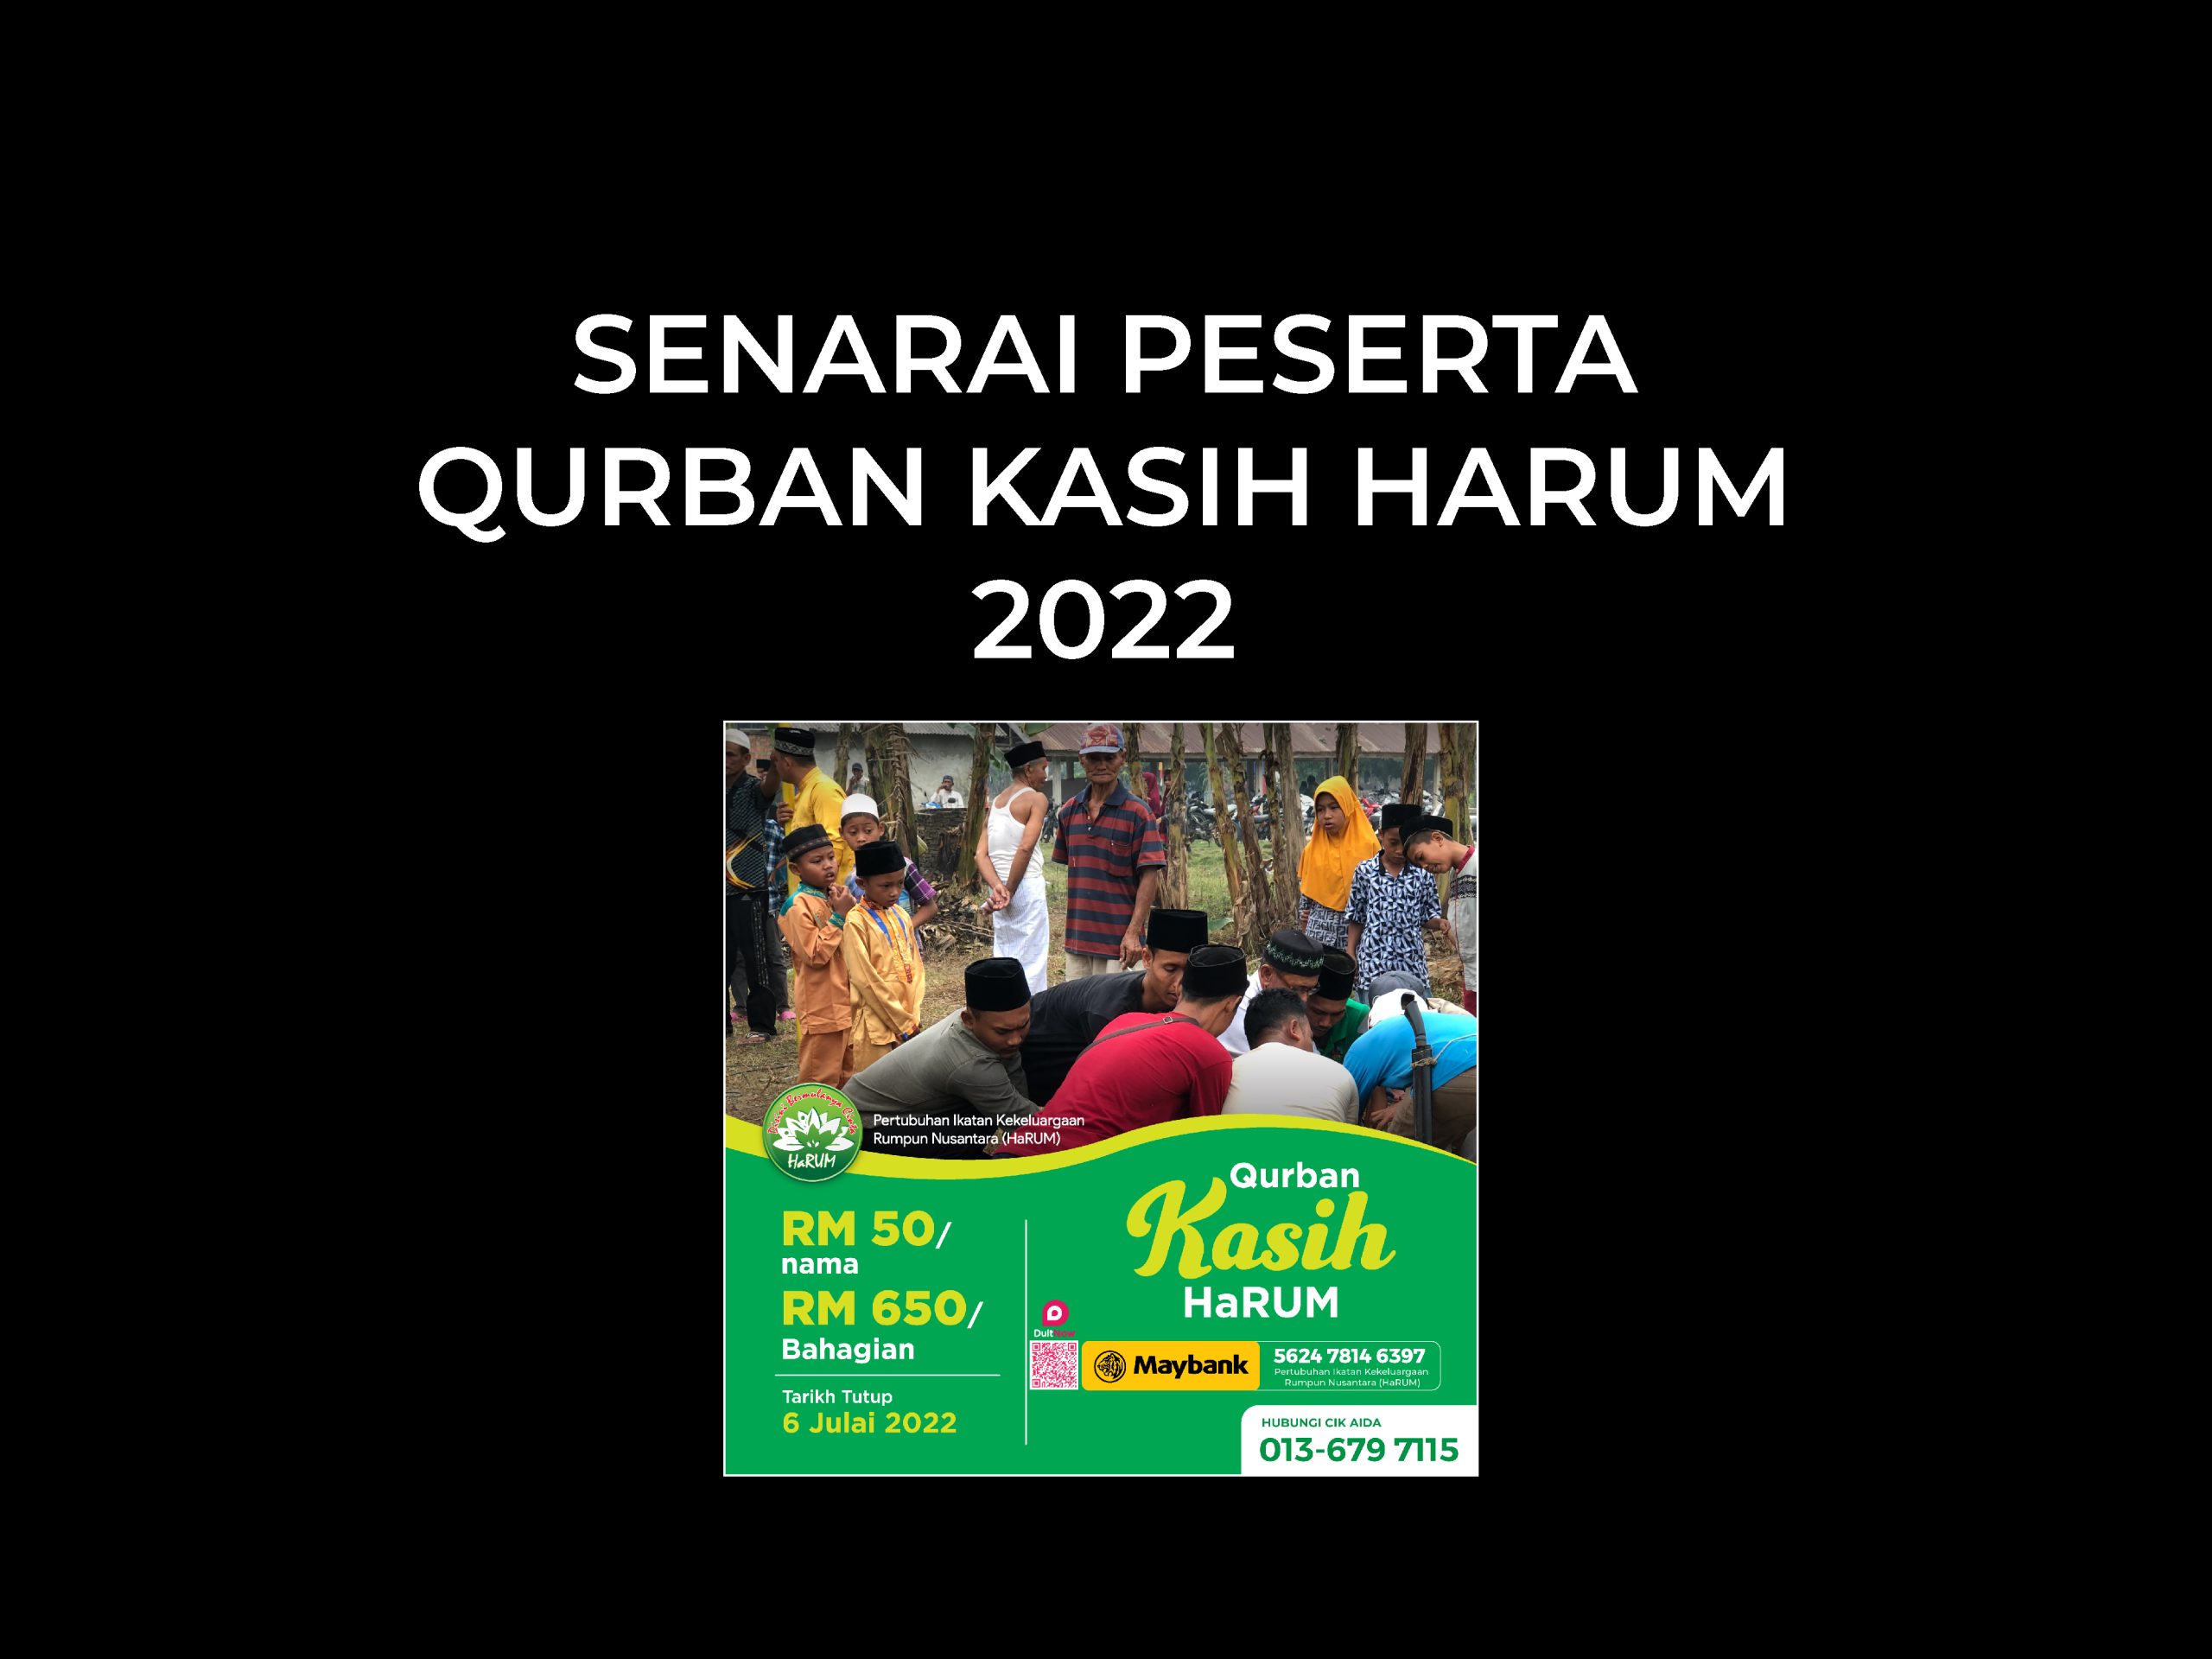 Senarai Peserta Qurban Kasih HaRUM 2022